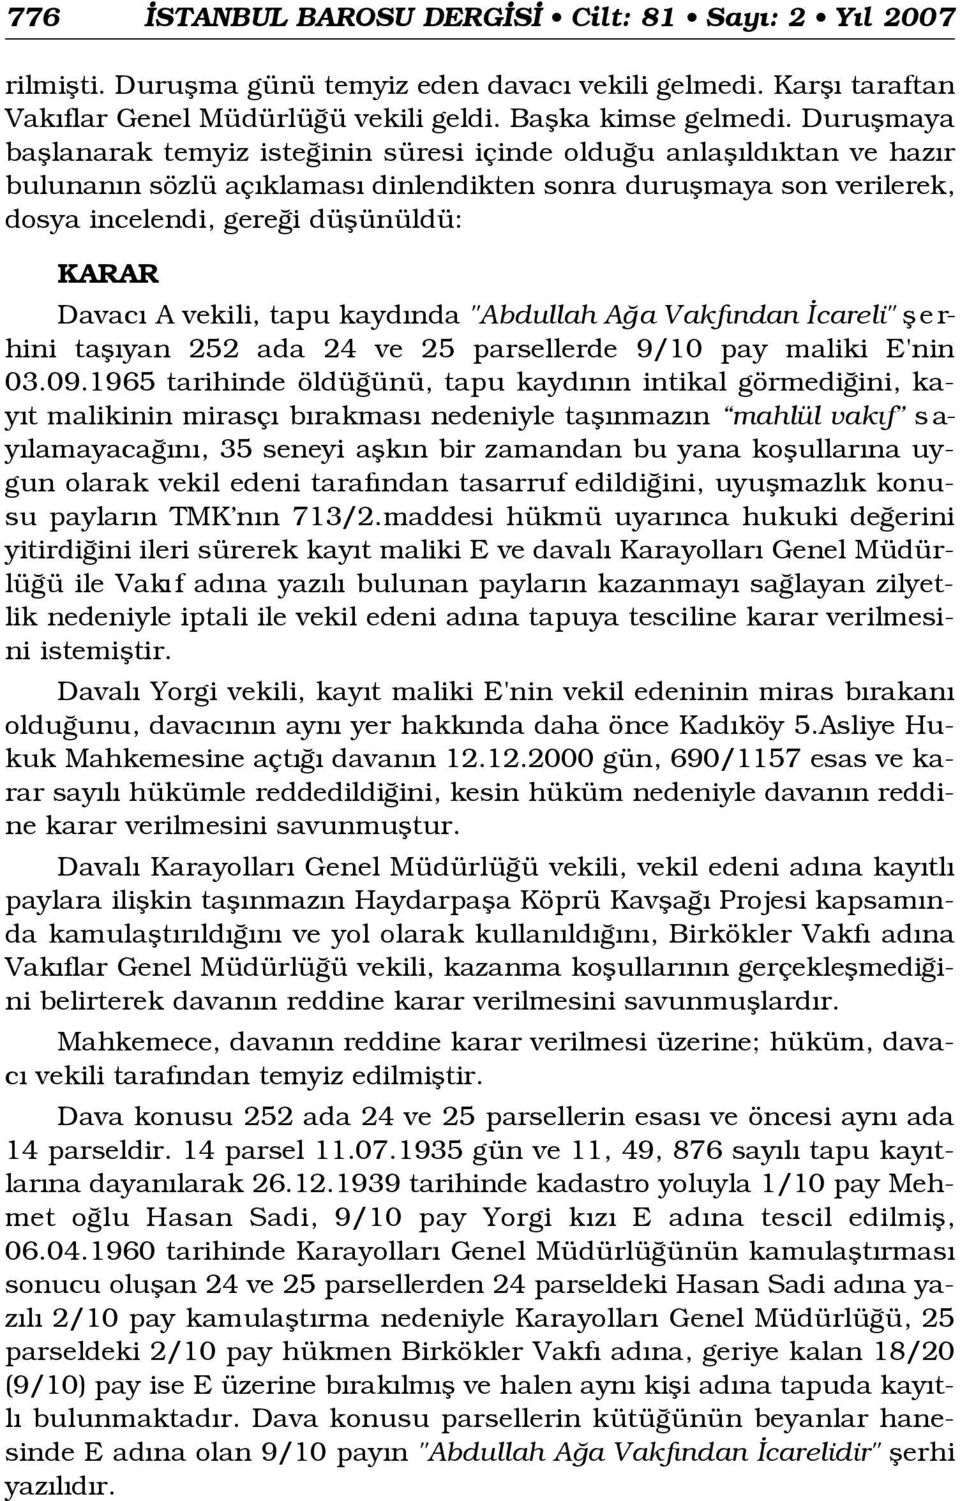 Davac A vekili, tapu kayd nda "Abdullah A a Vakf ndan careli" fl e r- hini tafl yan 252 ada 24 ve 25 parsellerde 9/10 pay maliki E'nin 03.09.